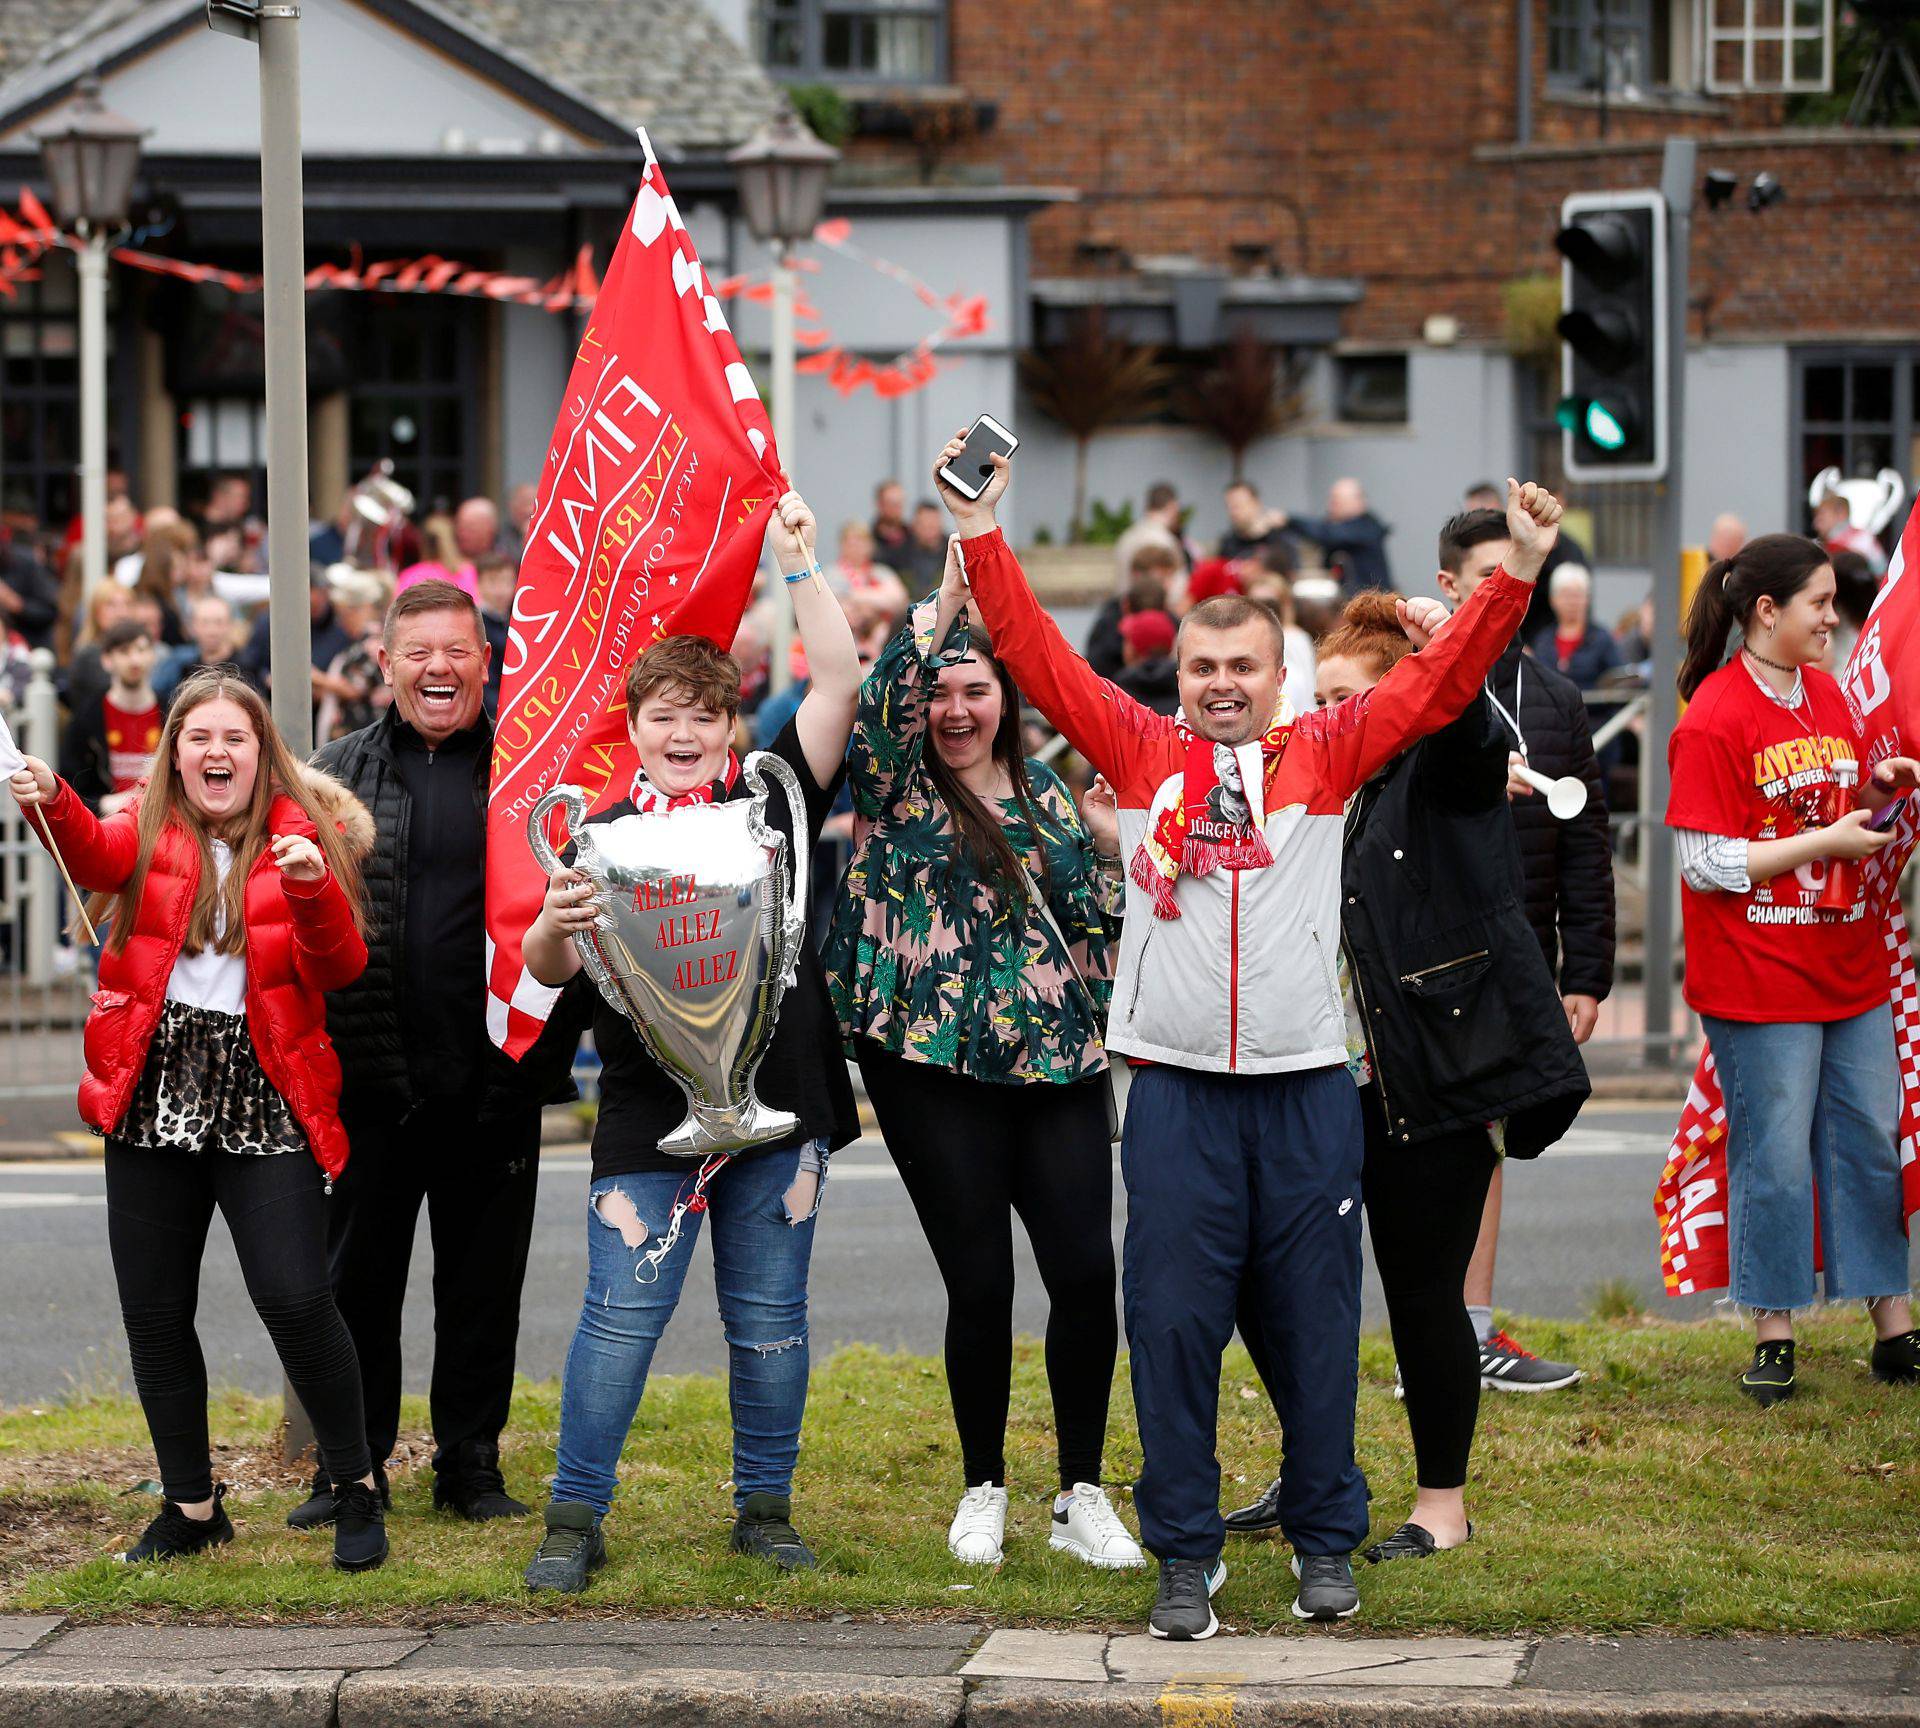 Šampion Liverpool došao kući, spektakularna parada u gradu